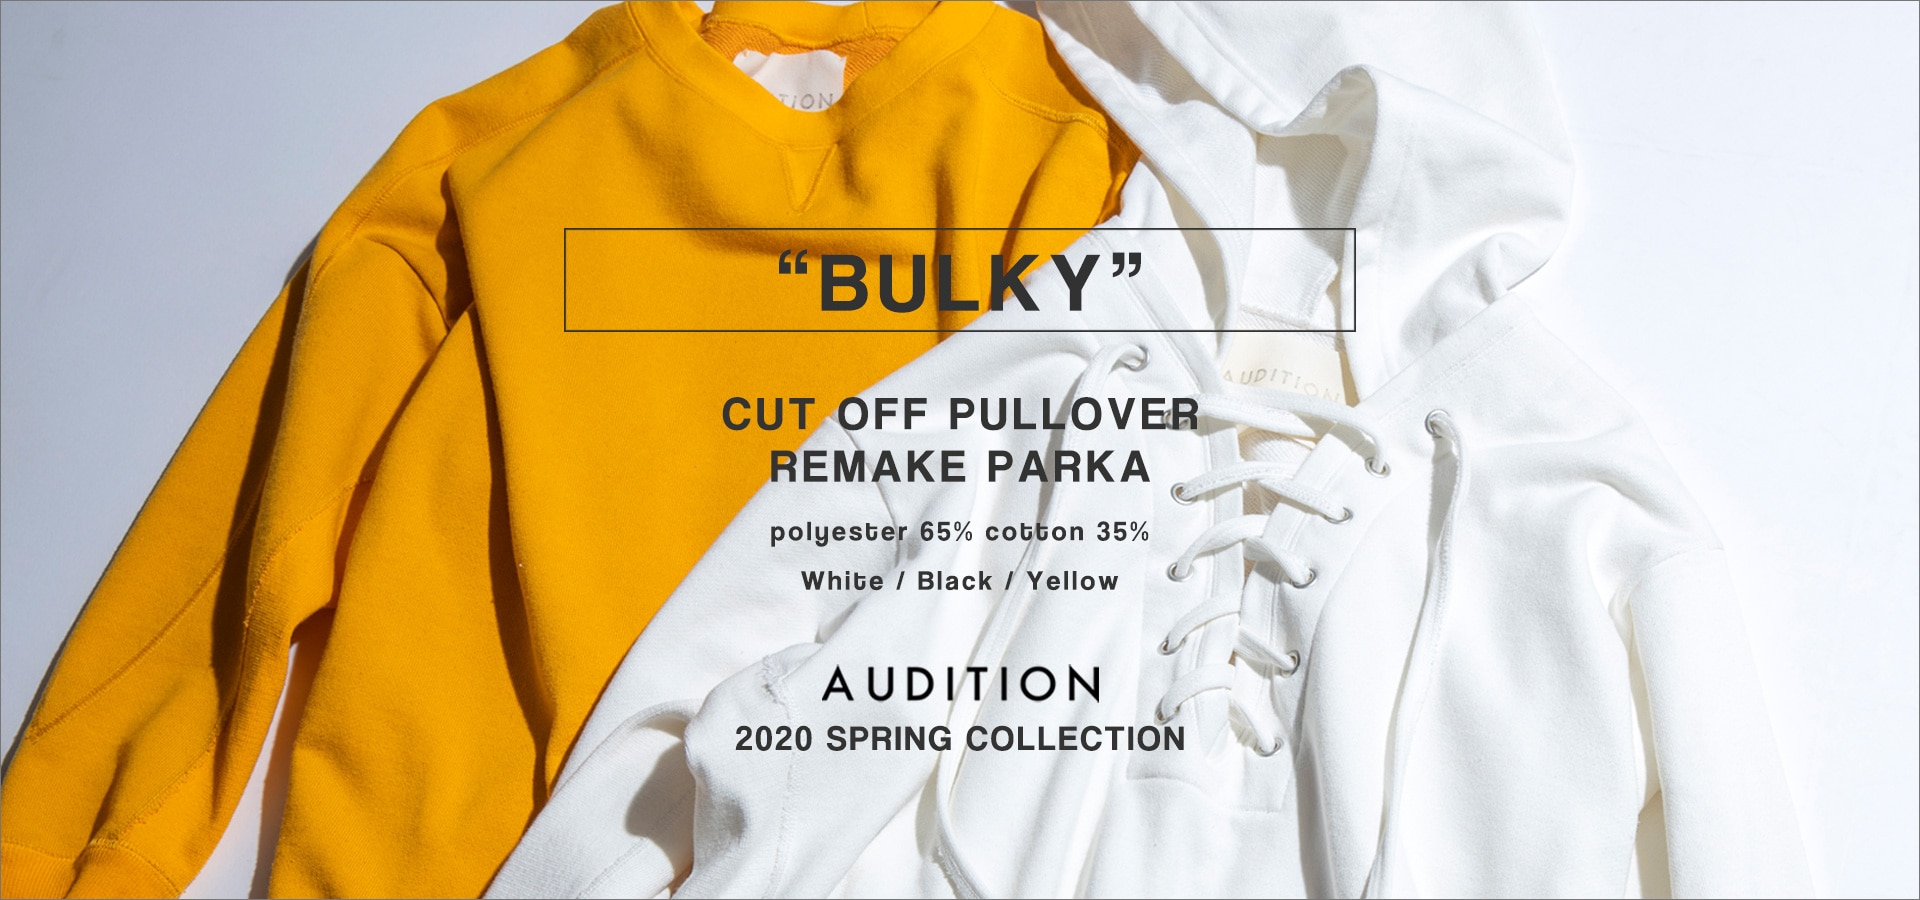 BULKY - all items